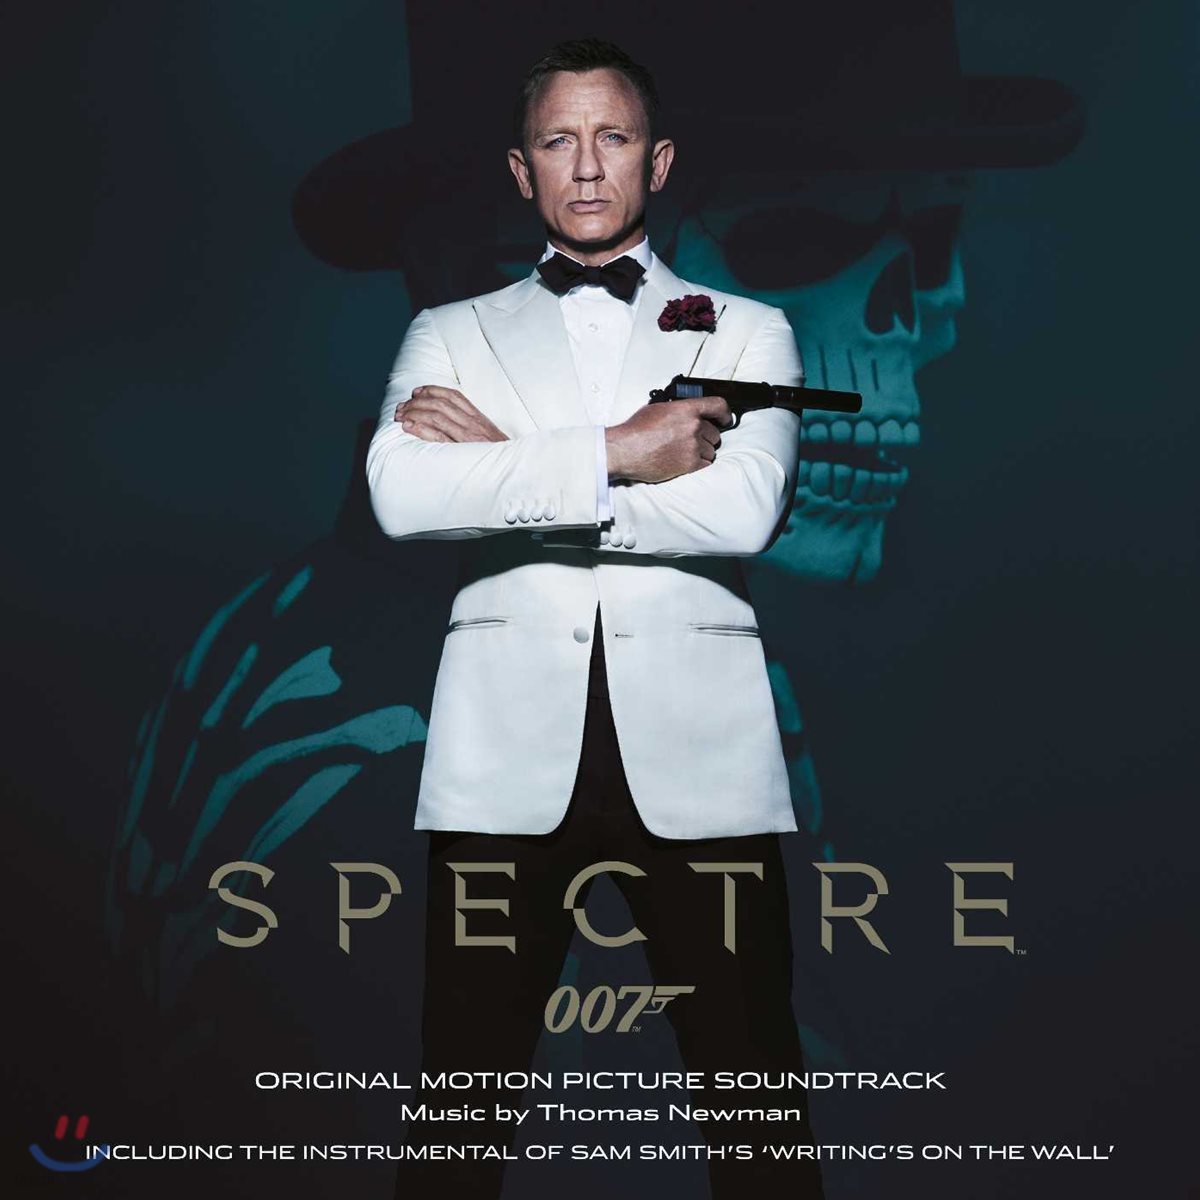 토마스 뉴만: 007 스펙터 OST (Thomas Newman: Spectre 007 Soundtrack)[2LP]